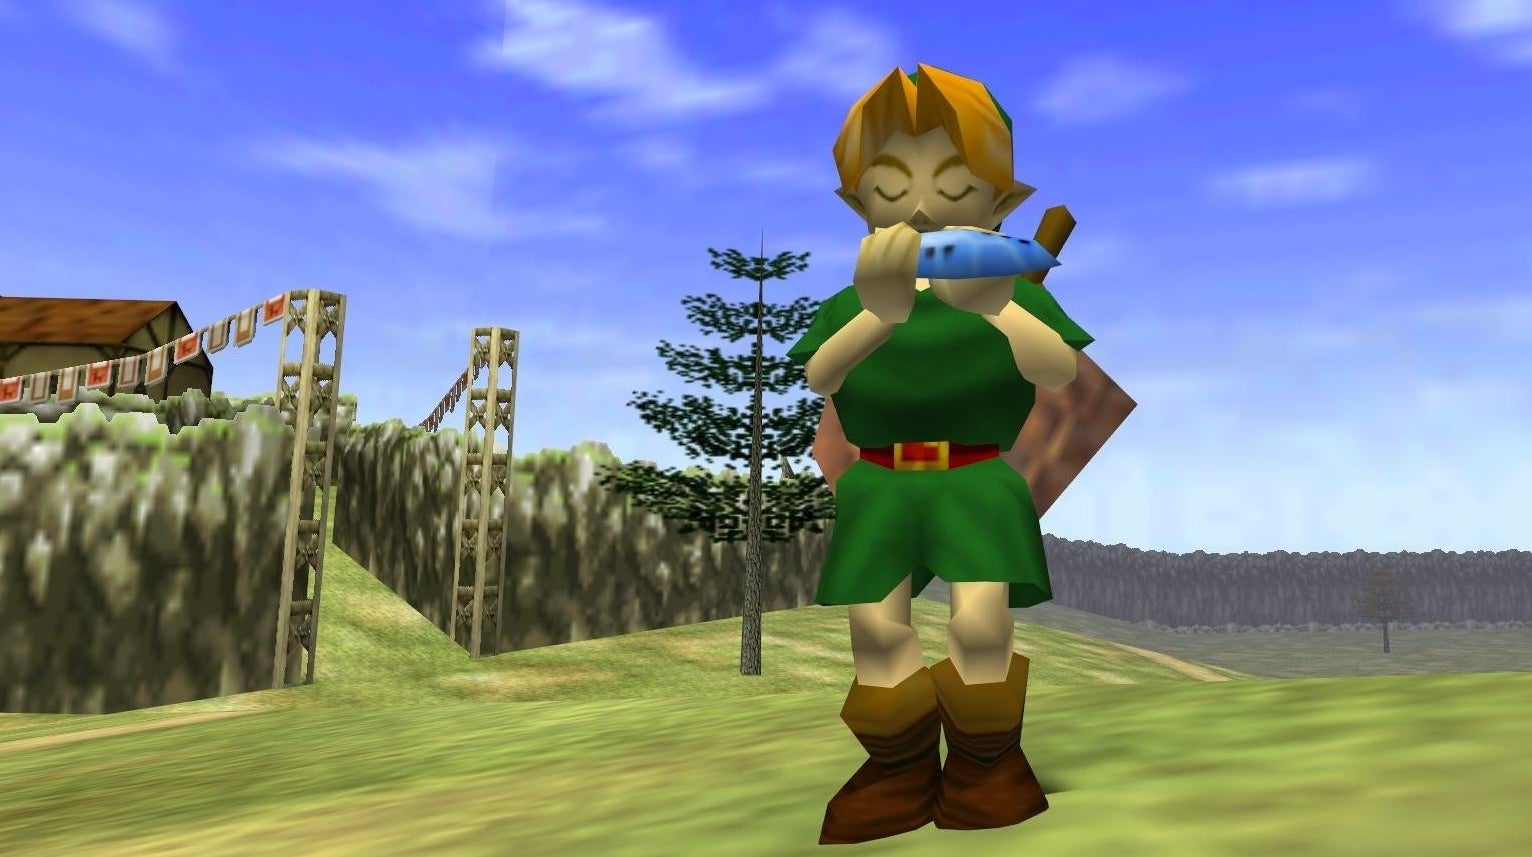 Immagine di Eurogamer festeggia i 35 anni di The Legend of Zelda